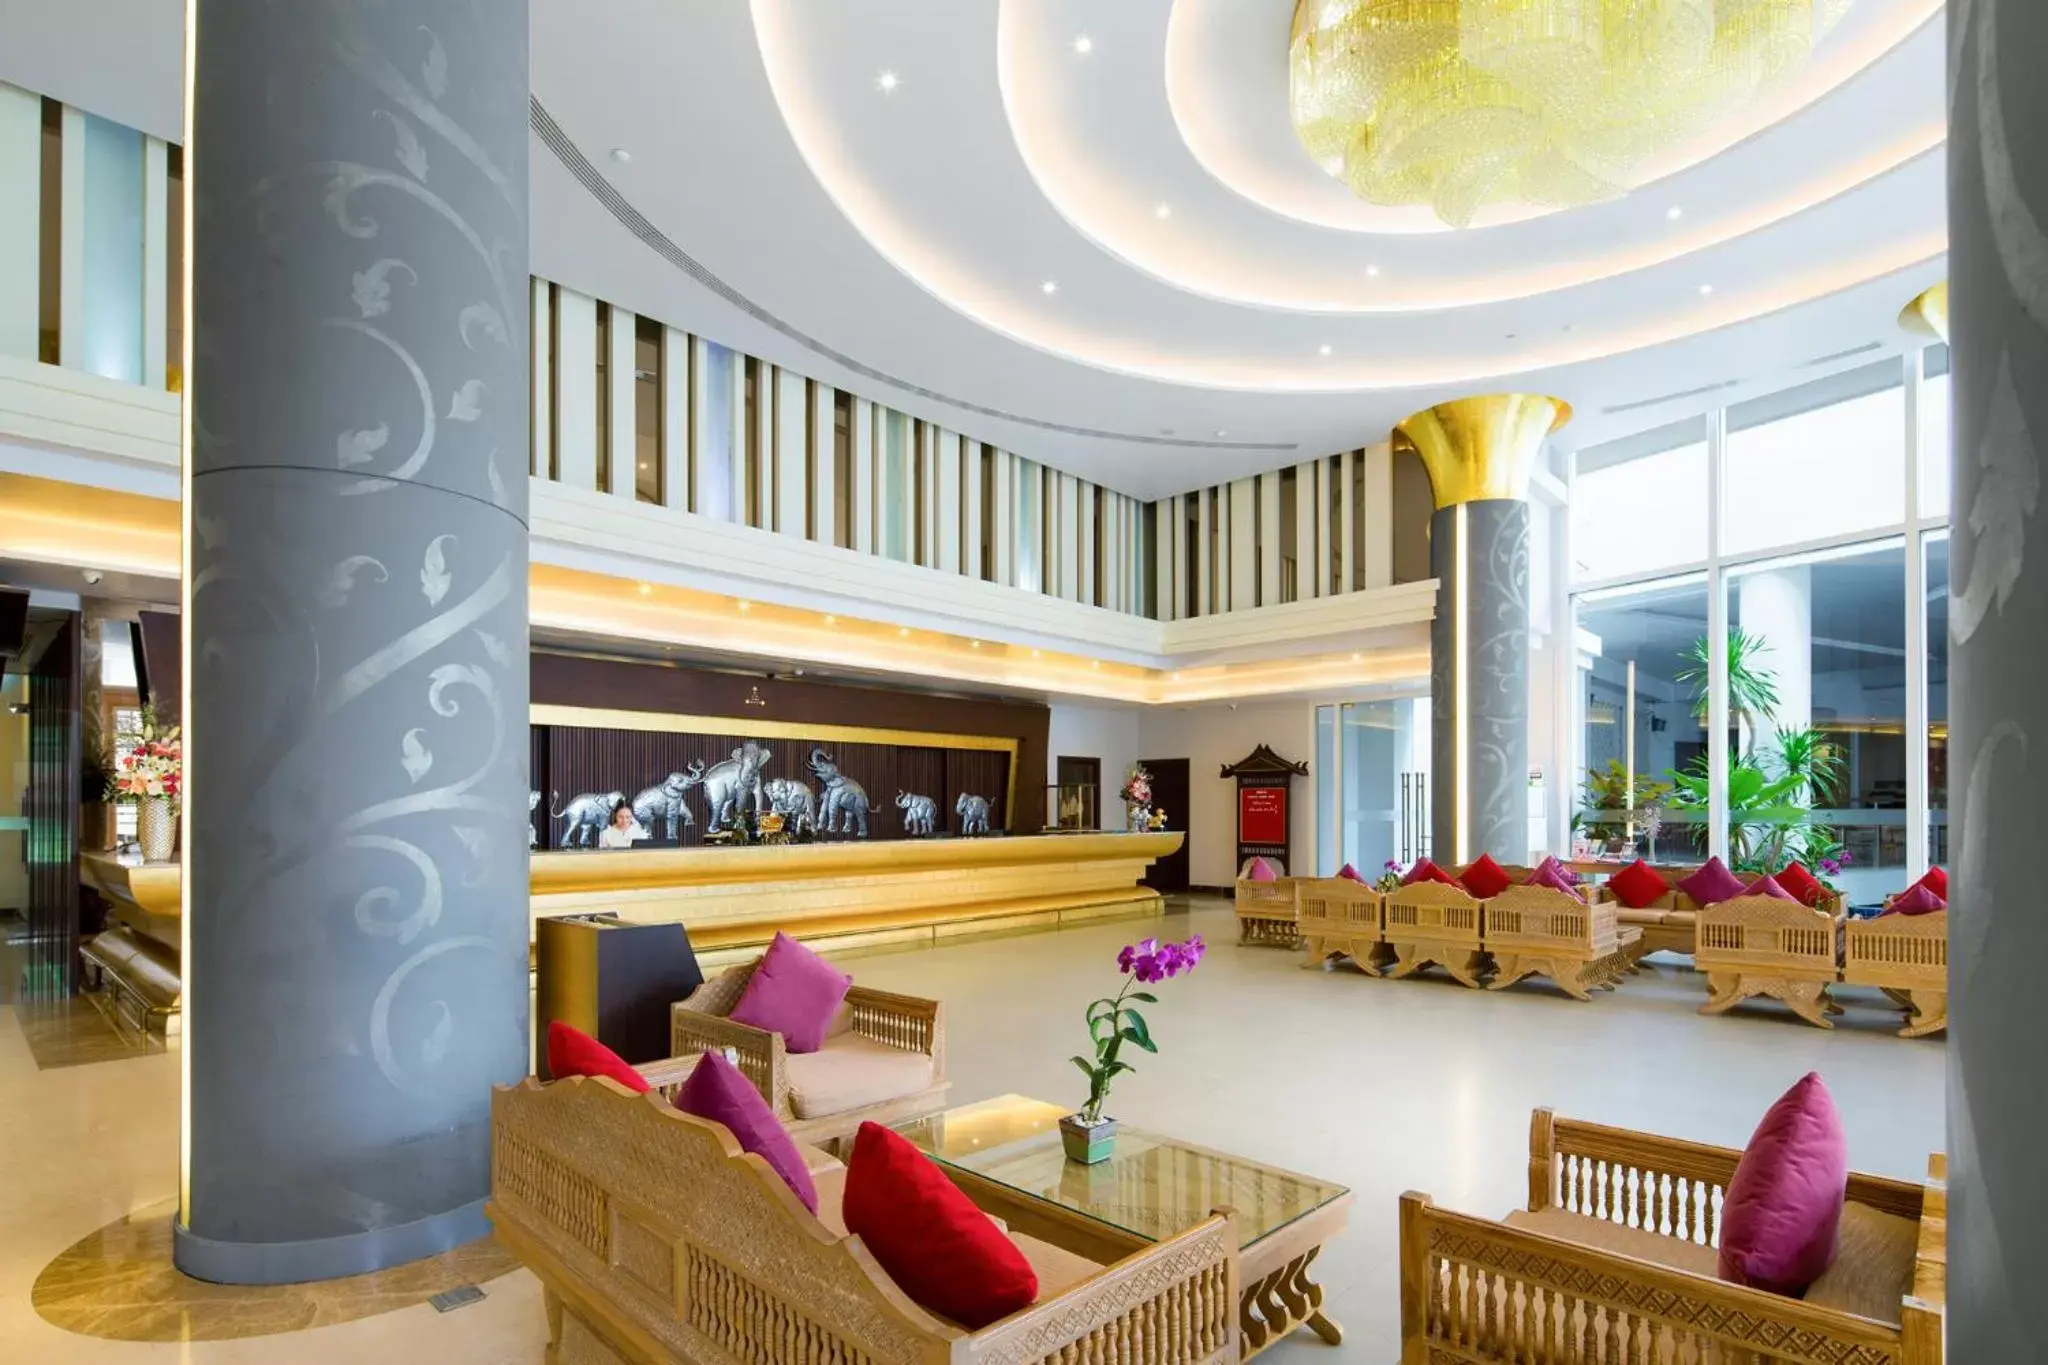 Lobby or reception in Aiyara Grand Hotel